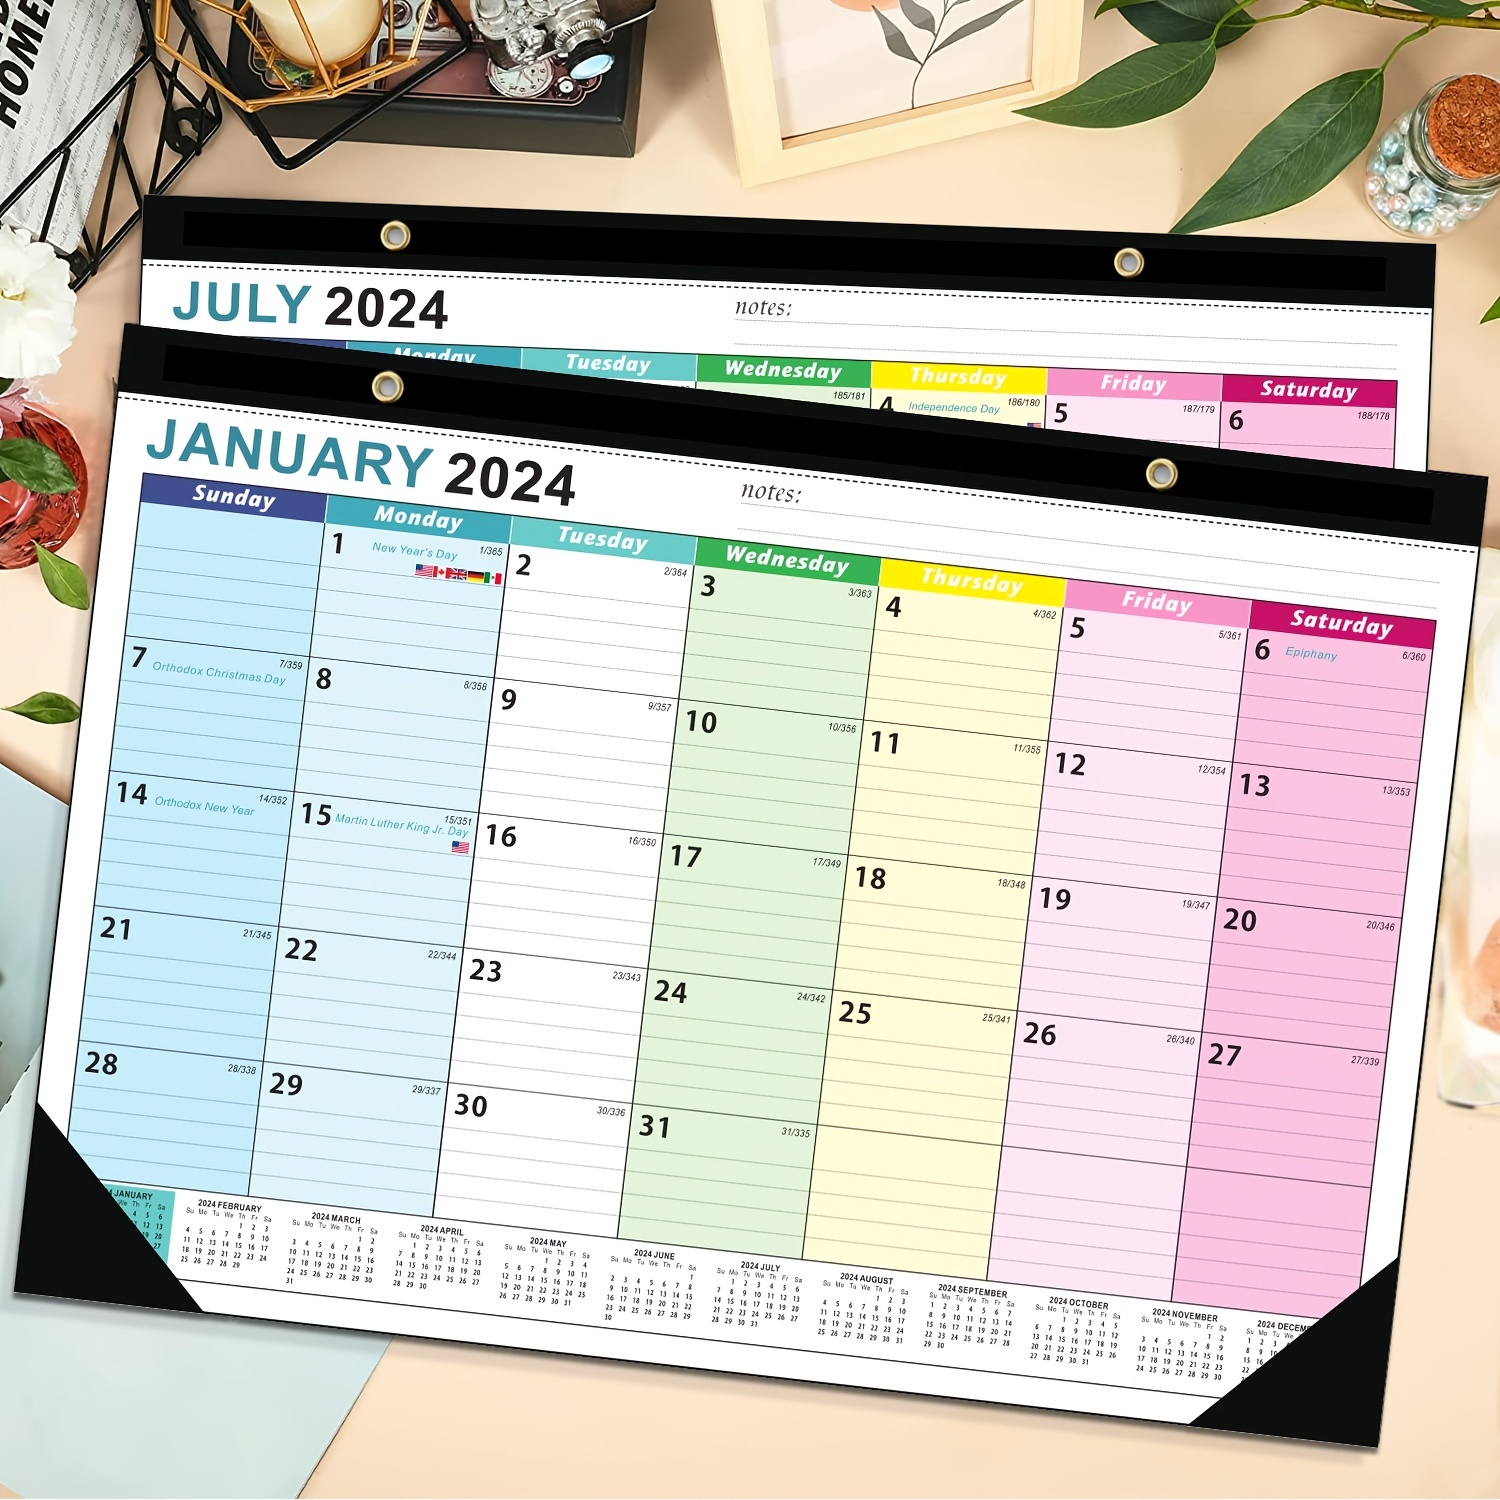 Calendrier 2024-2025 Calendrier mural, janvier 2024 - juin 2025 Calendrier,  calendrier des jours fériés 18 mois